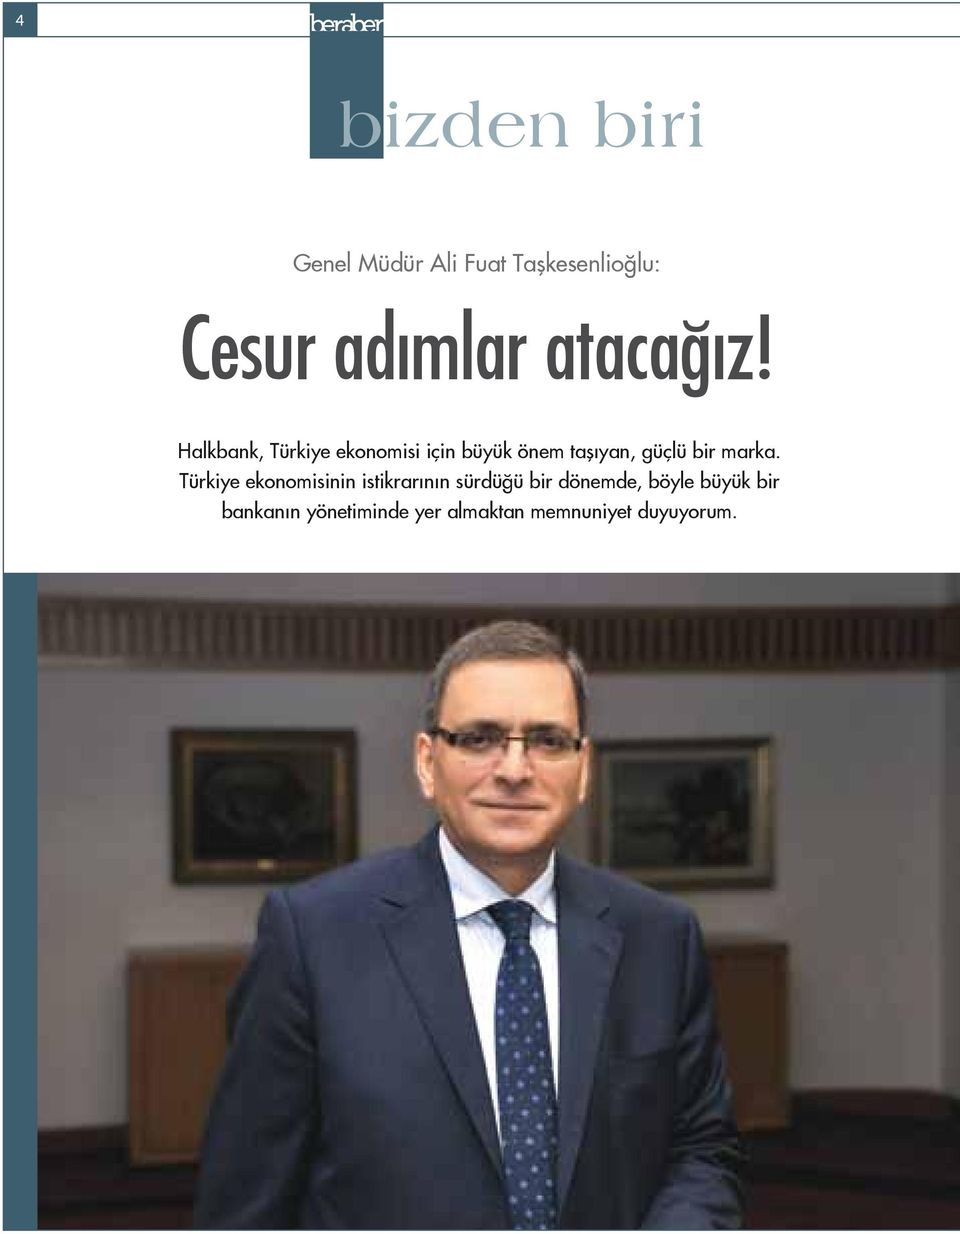 Halkbank, Türkiye ekonomisi için büyük önem taşıyan, güçlü bir